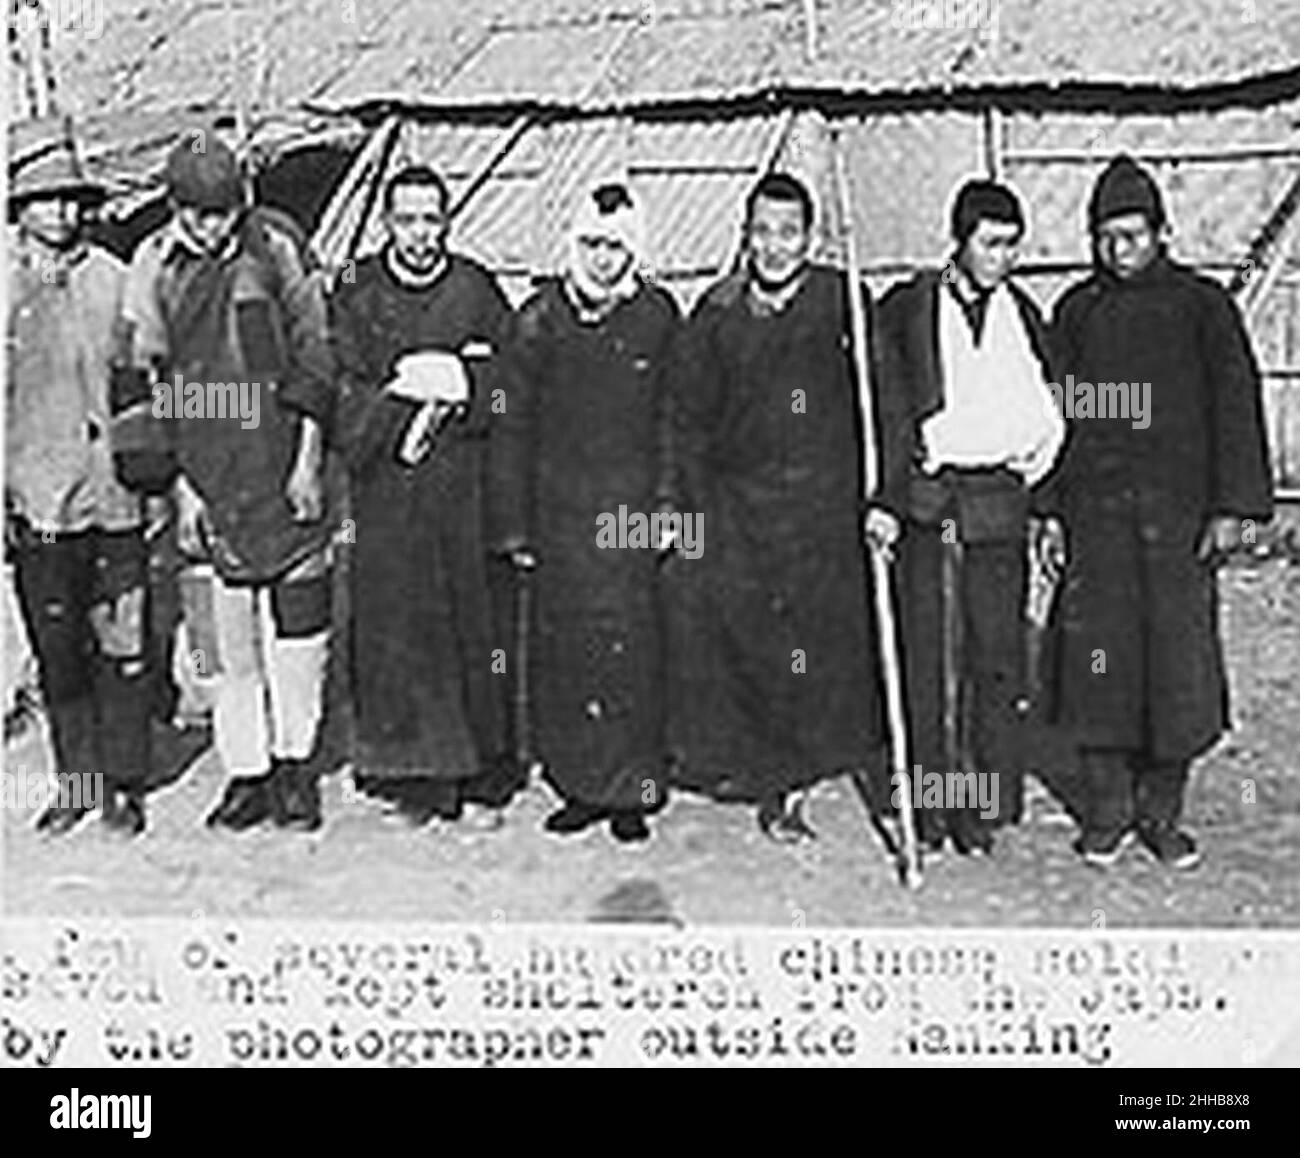 Some Chinese saved by Sindberg outside Nanjing, Nanjing Massacre. Stock Photo